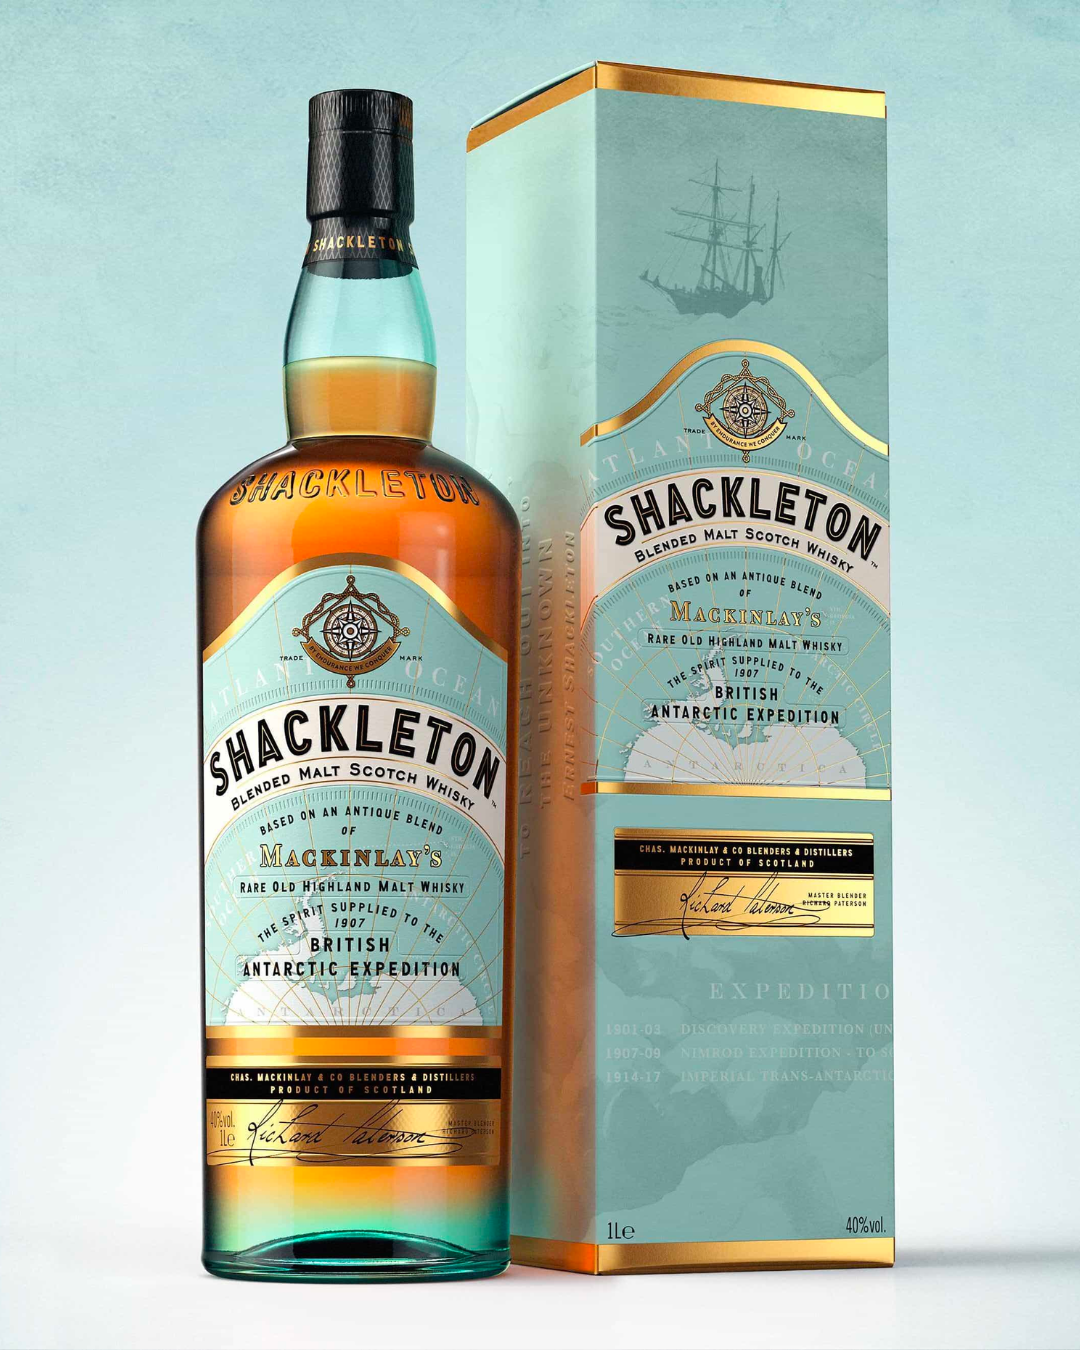 Shackleton Scotch